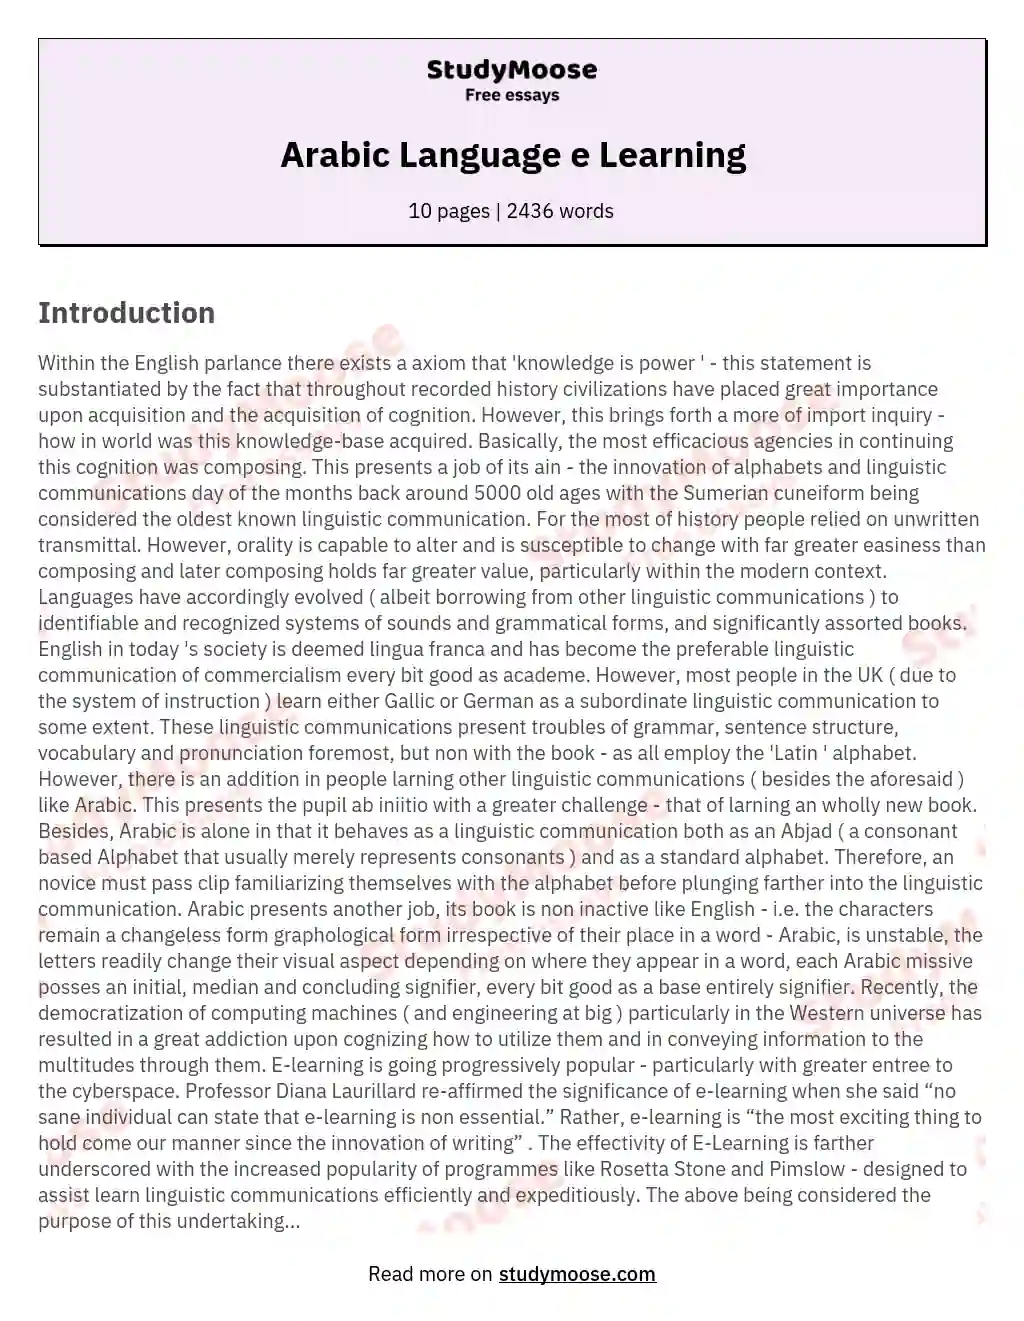 Arabic Language e Learning essay